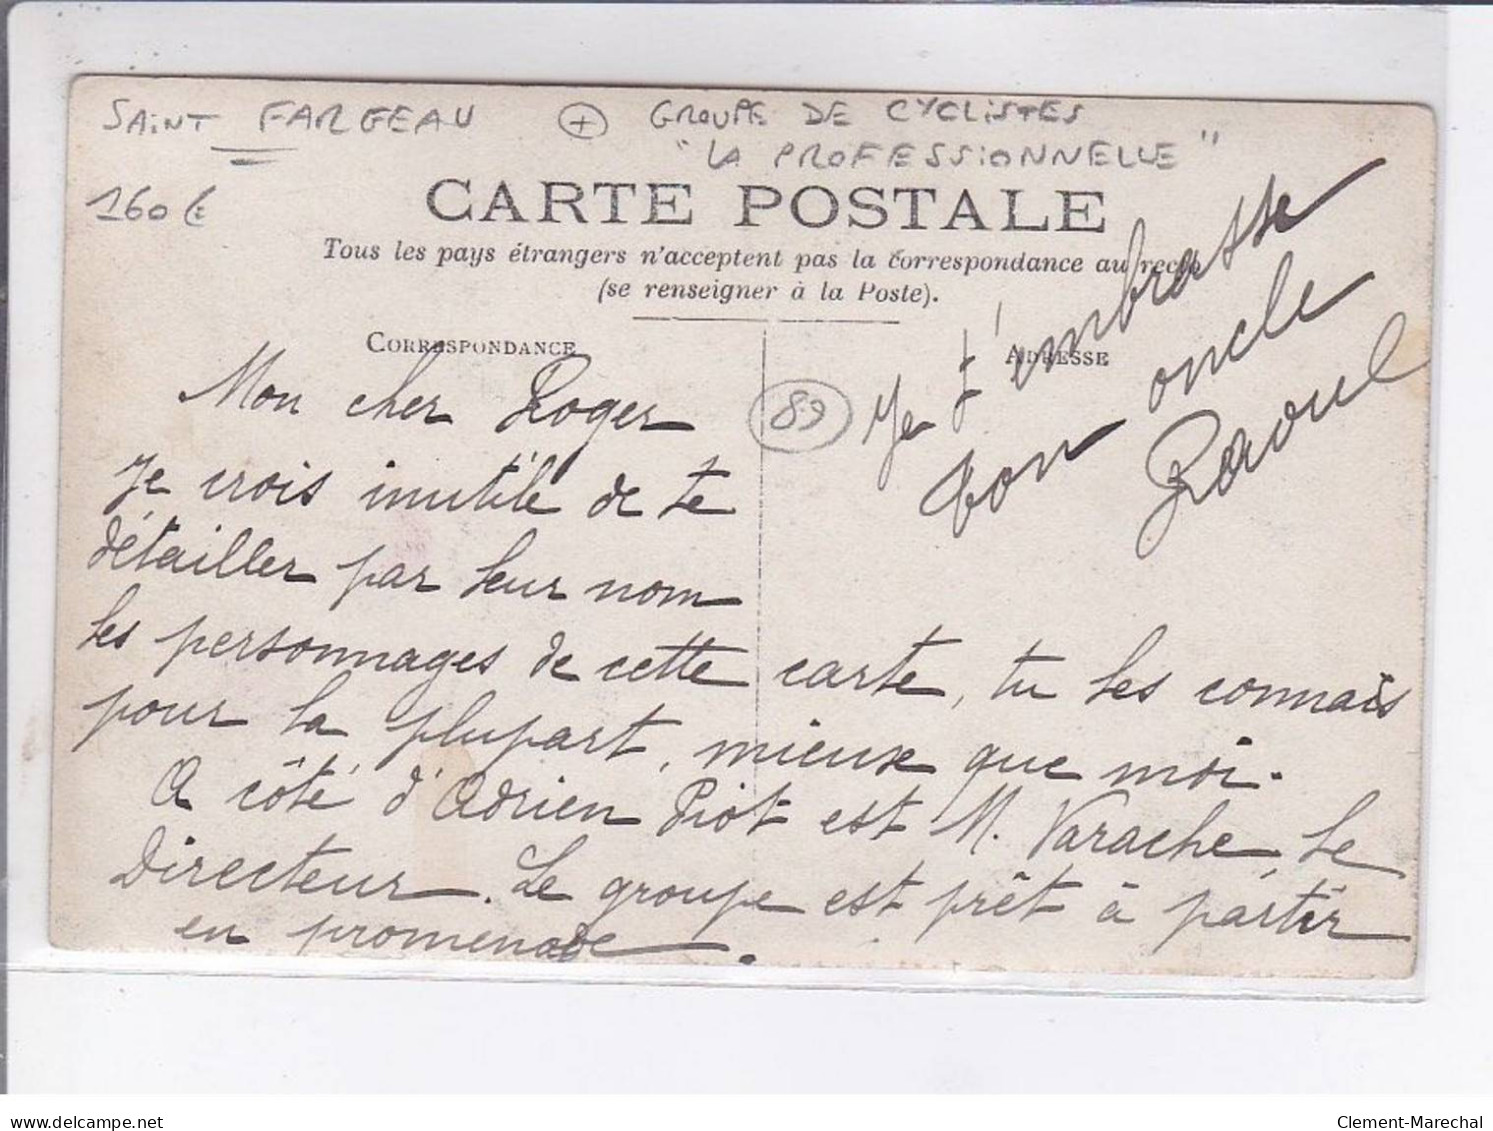 SAINT-FARGEAU: 18 Mai 1909, Groupe De Cycliste "la Professionnelle" - Très Bon état - Saint Fargeau